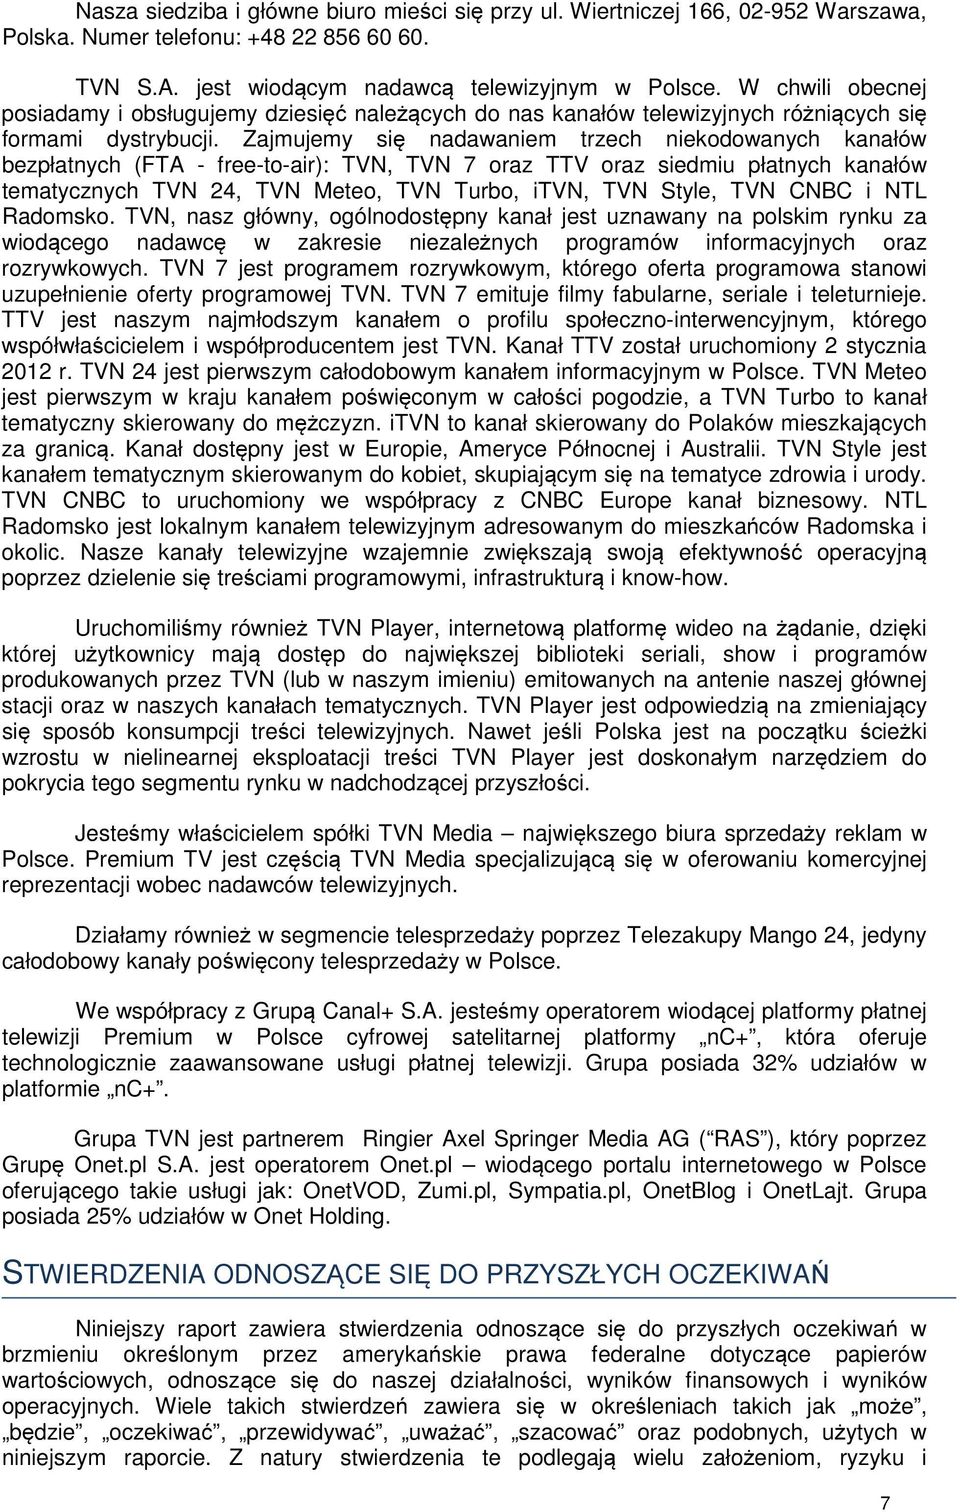 Zajmujemy się nadawaniem trzech niekodowanych kanałów bezpłatnych (FTA - free-to-air): TVN, TVN 7 oraz TTV oraz siedmiu płatnych kanałów tematycznych TVN 24, TVN Meteo, TVN Turbo, itvn, TVN Style,